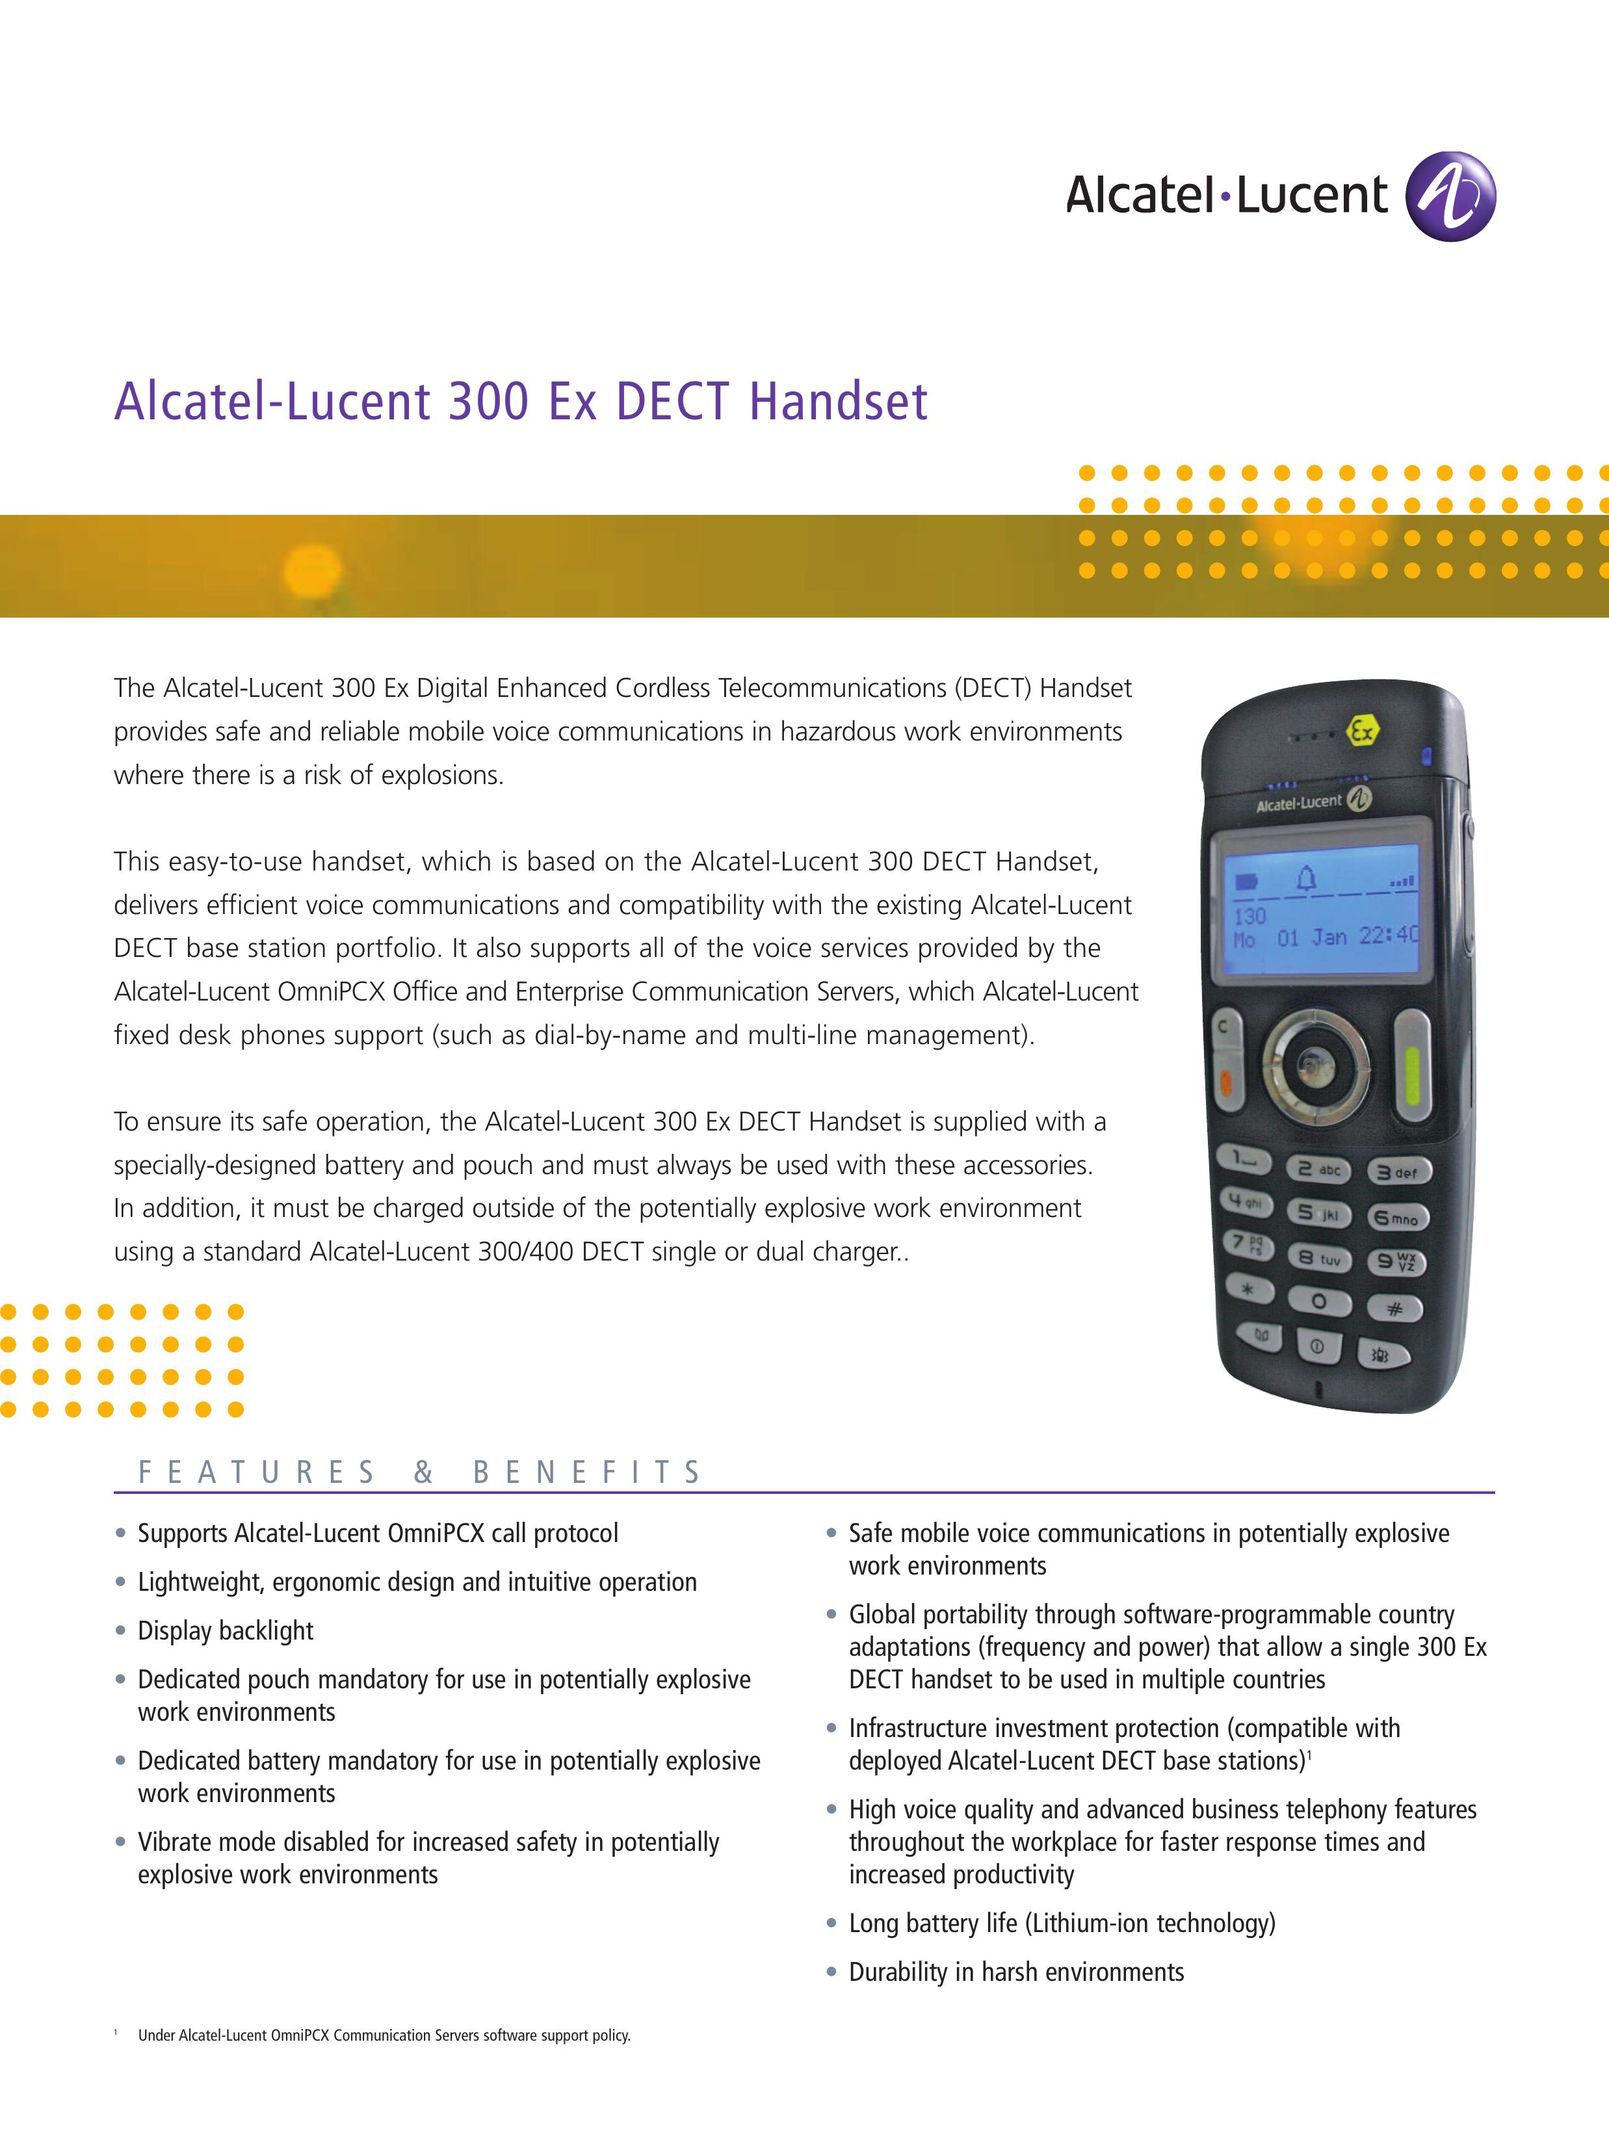 Alcatel-Lucent 300 Ex Headphones User Manual